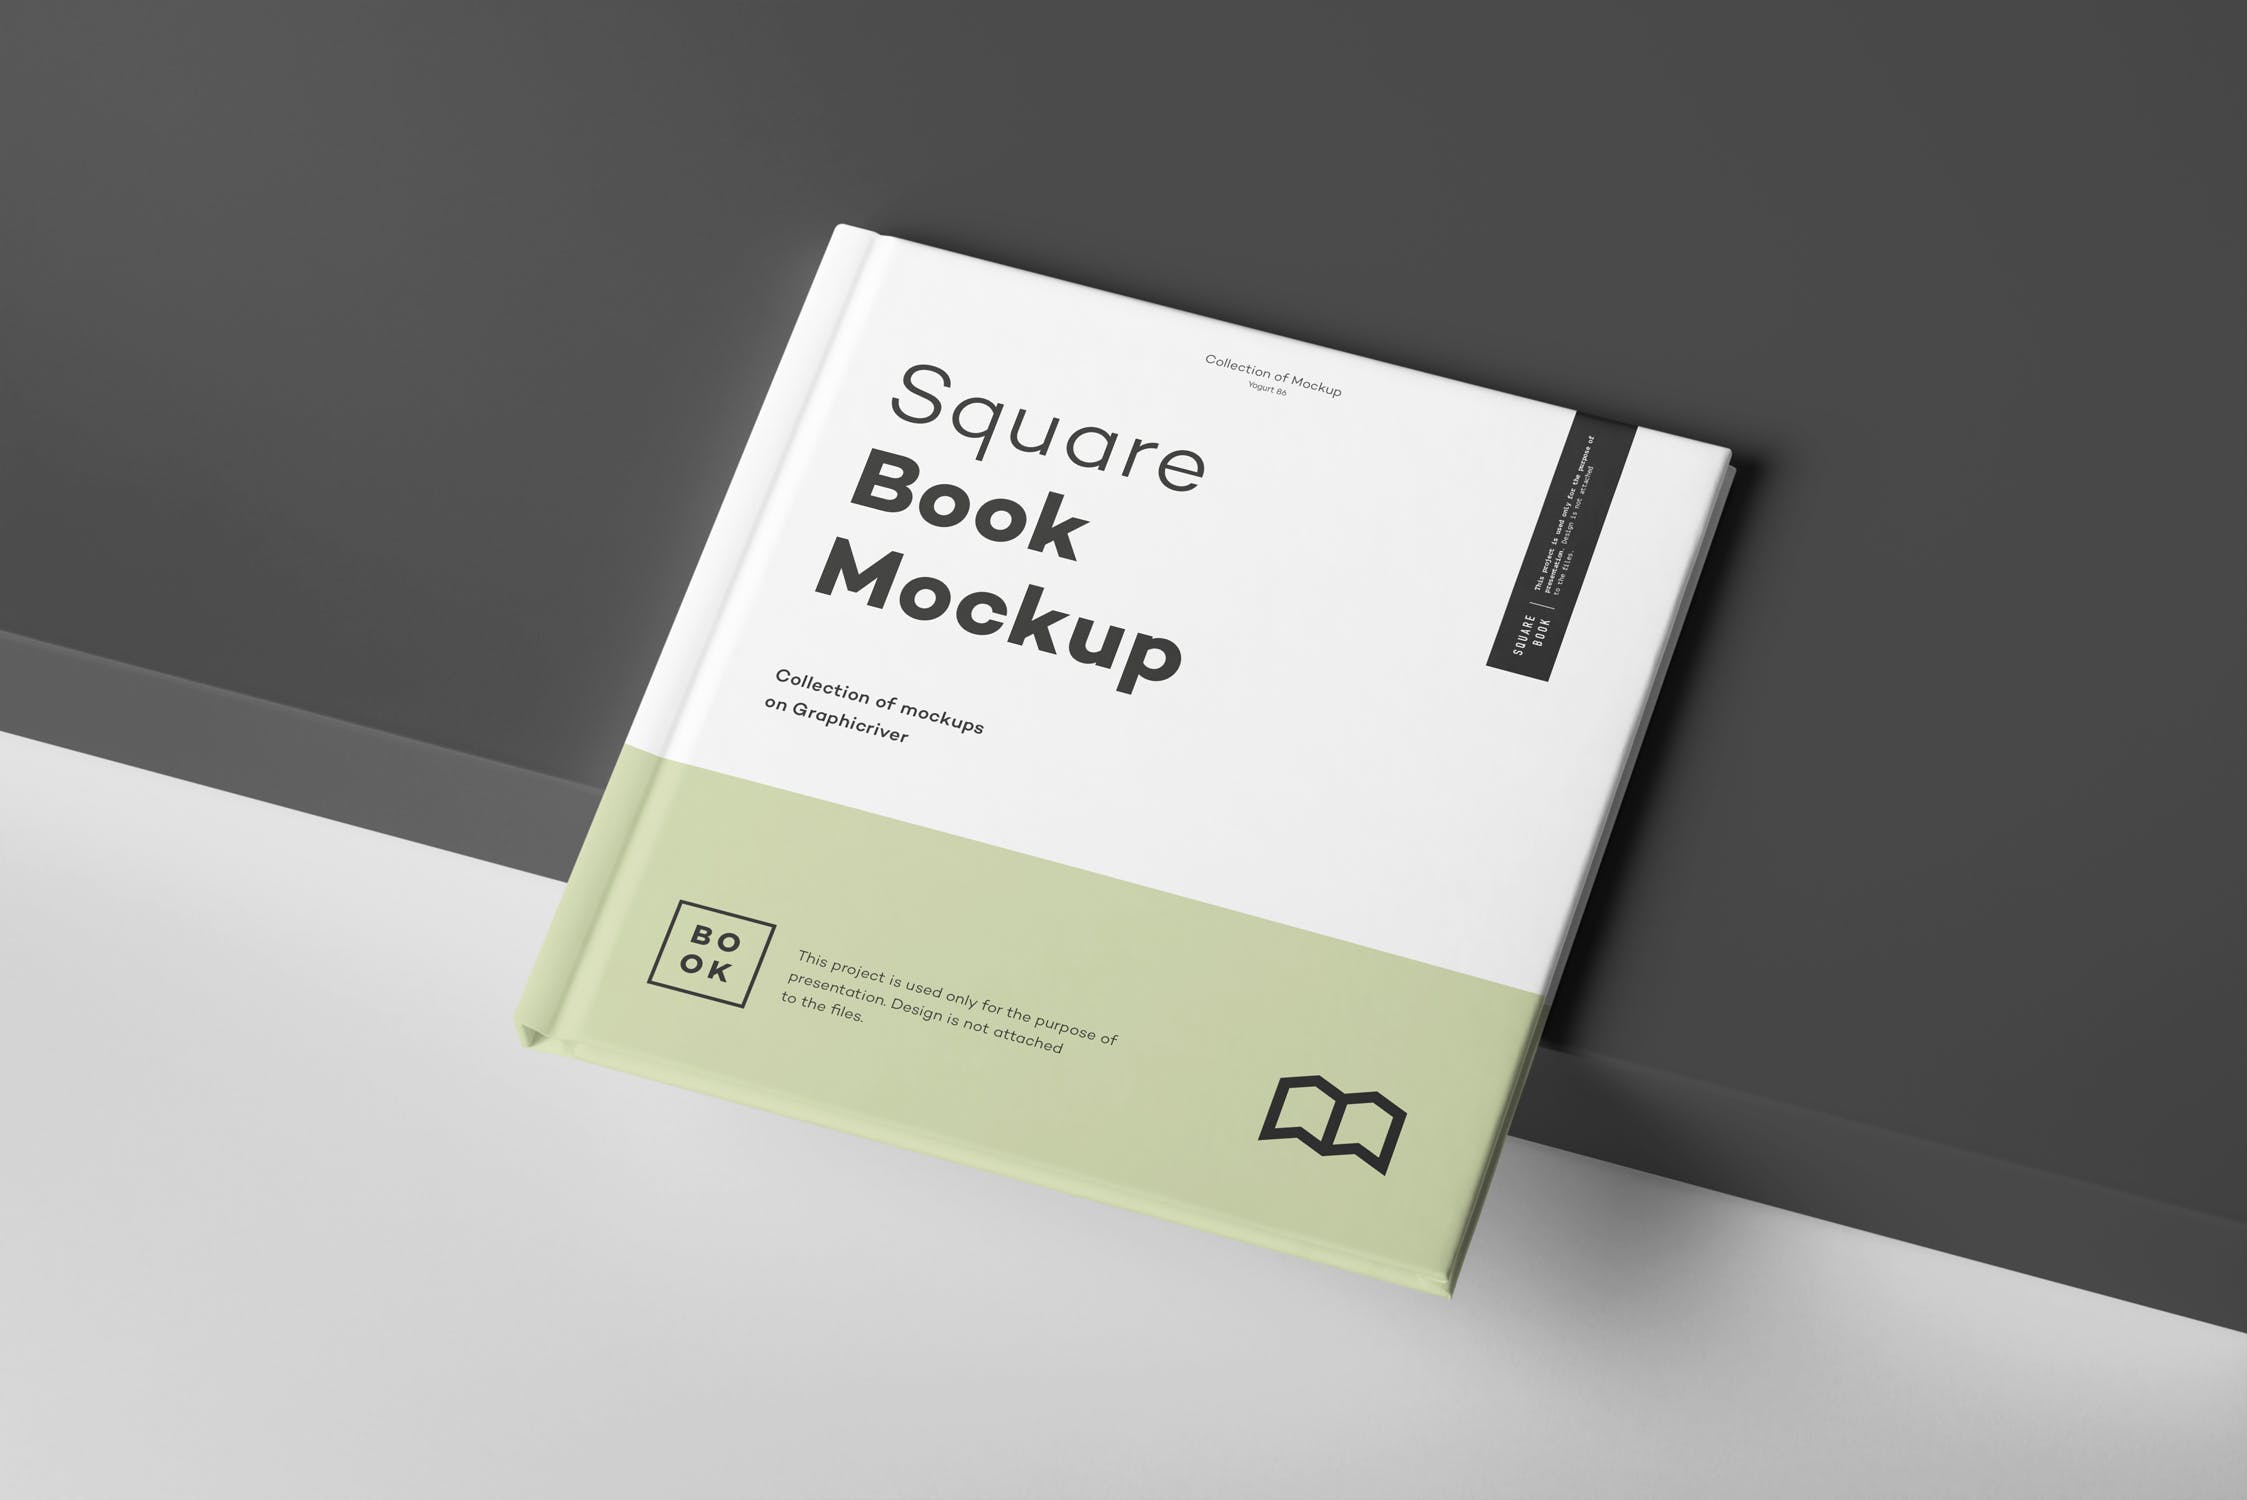 方形精装图书封面&内页版式设计预览样机 Square Book Mock up 2插图(2)